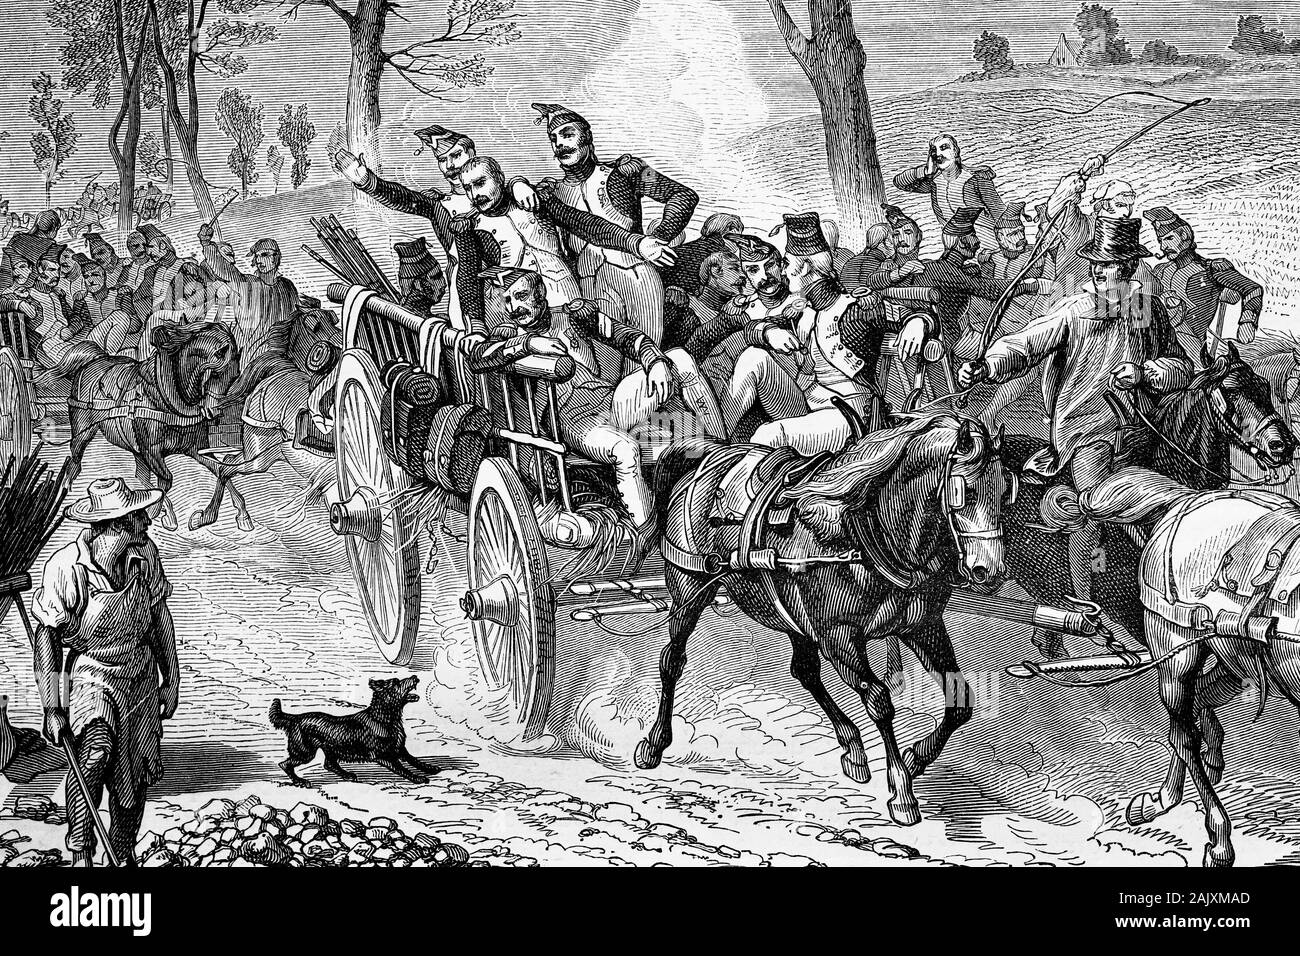 Guardia imperial viajando en carruajes. Guerras napoleónicas. Ilustración antigua.1890. Foto de stock